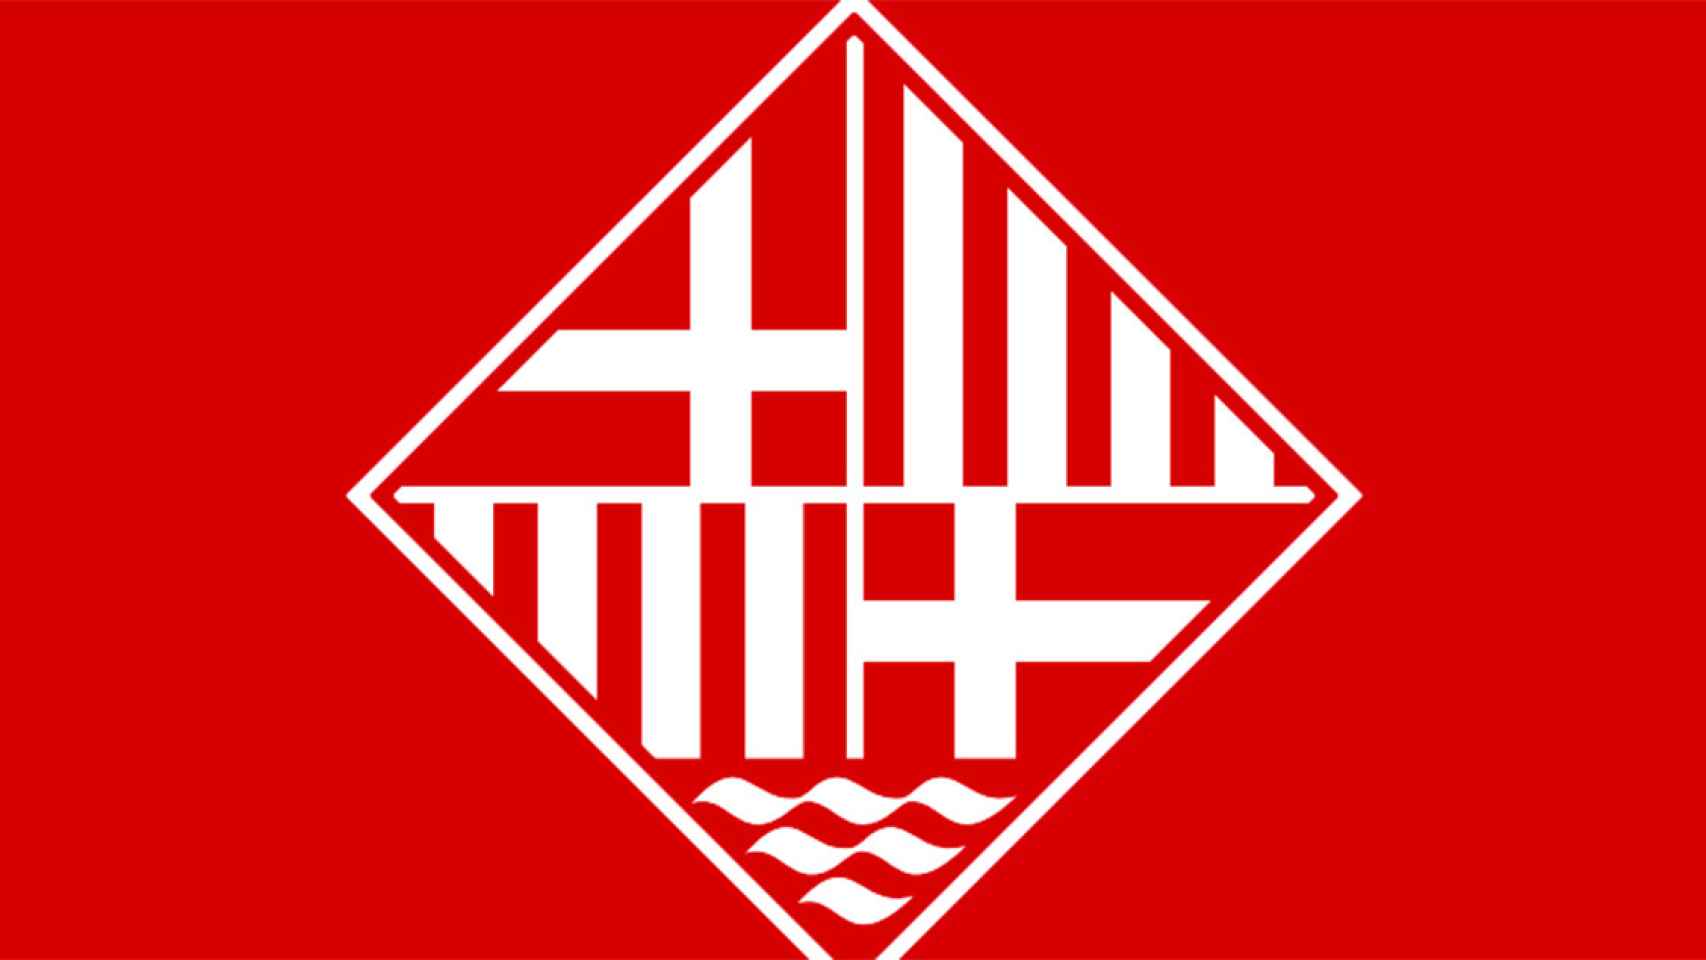 Una de las propuestas de nuevo escudo de la Cámara de Comercio de Barcelona